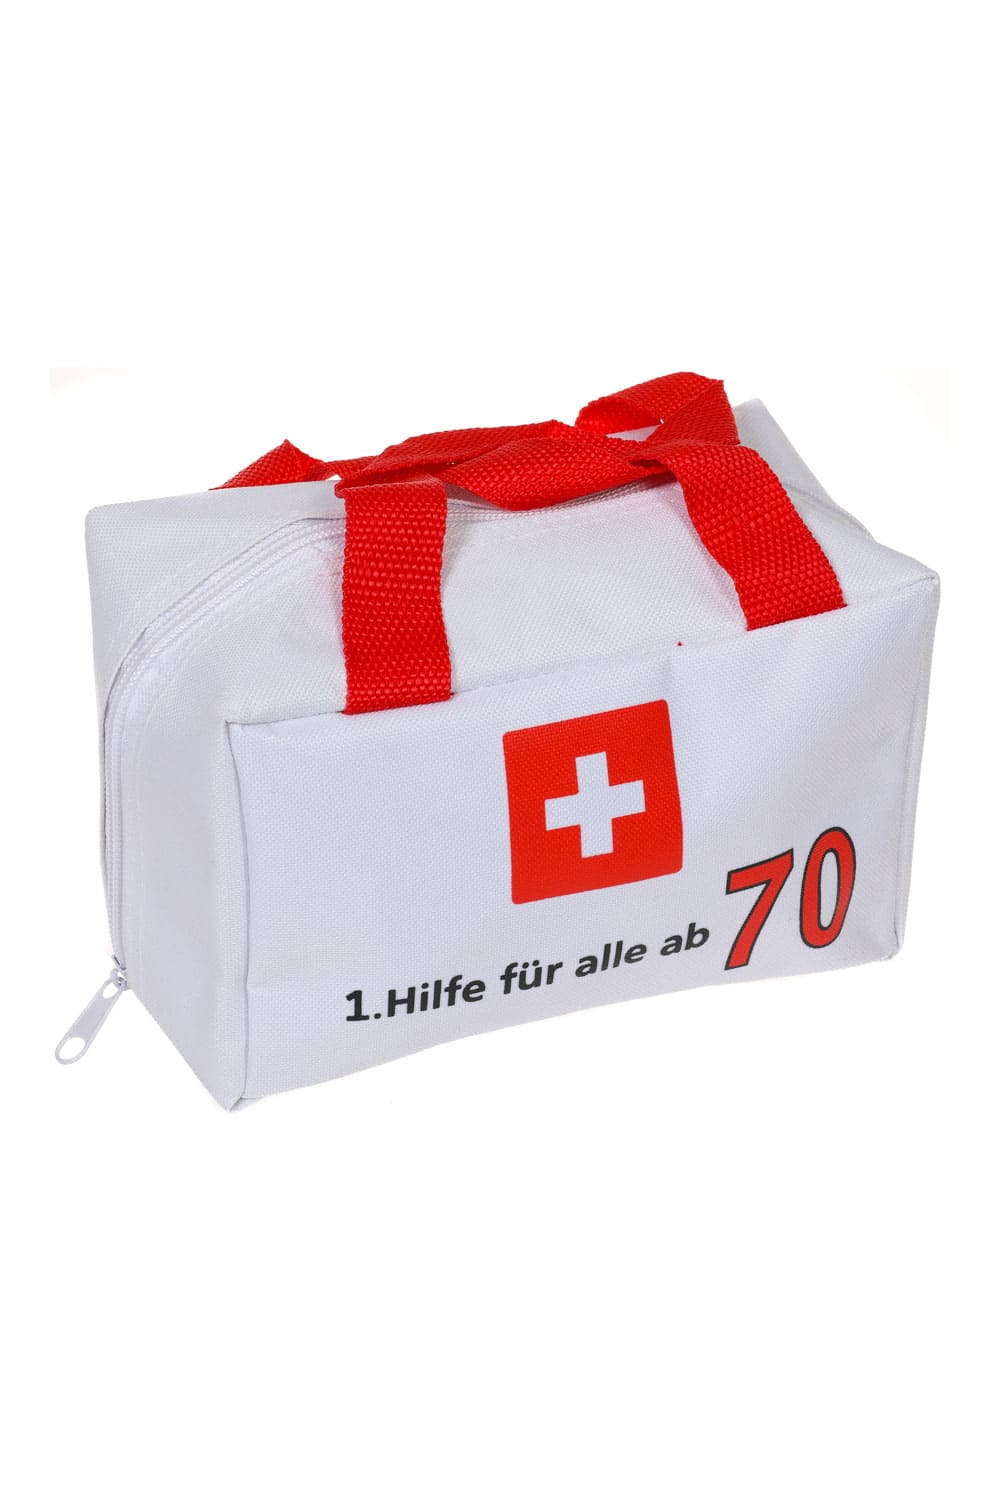 Eine witzige Geschenk Verpackung für den 70. Geburtstag. Die Notfall Tasche ist bedruckt mit der Geburtstagszahl und dem Spruch: 1. Hilfe fuer alle ab 70. Die Erste Hilfe Tasche kann beliebig gefuellt werden und laesst der Kreativität keine Grenzen. 